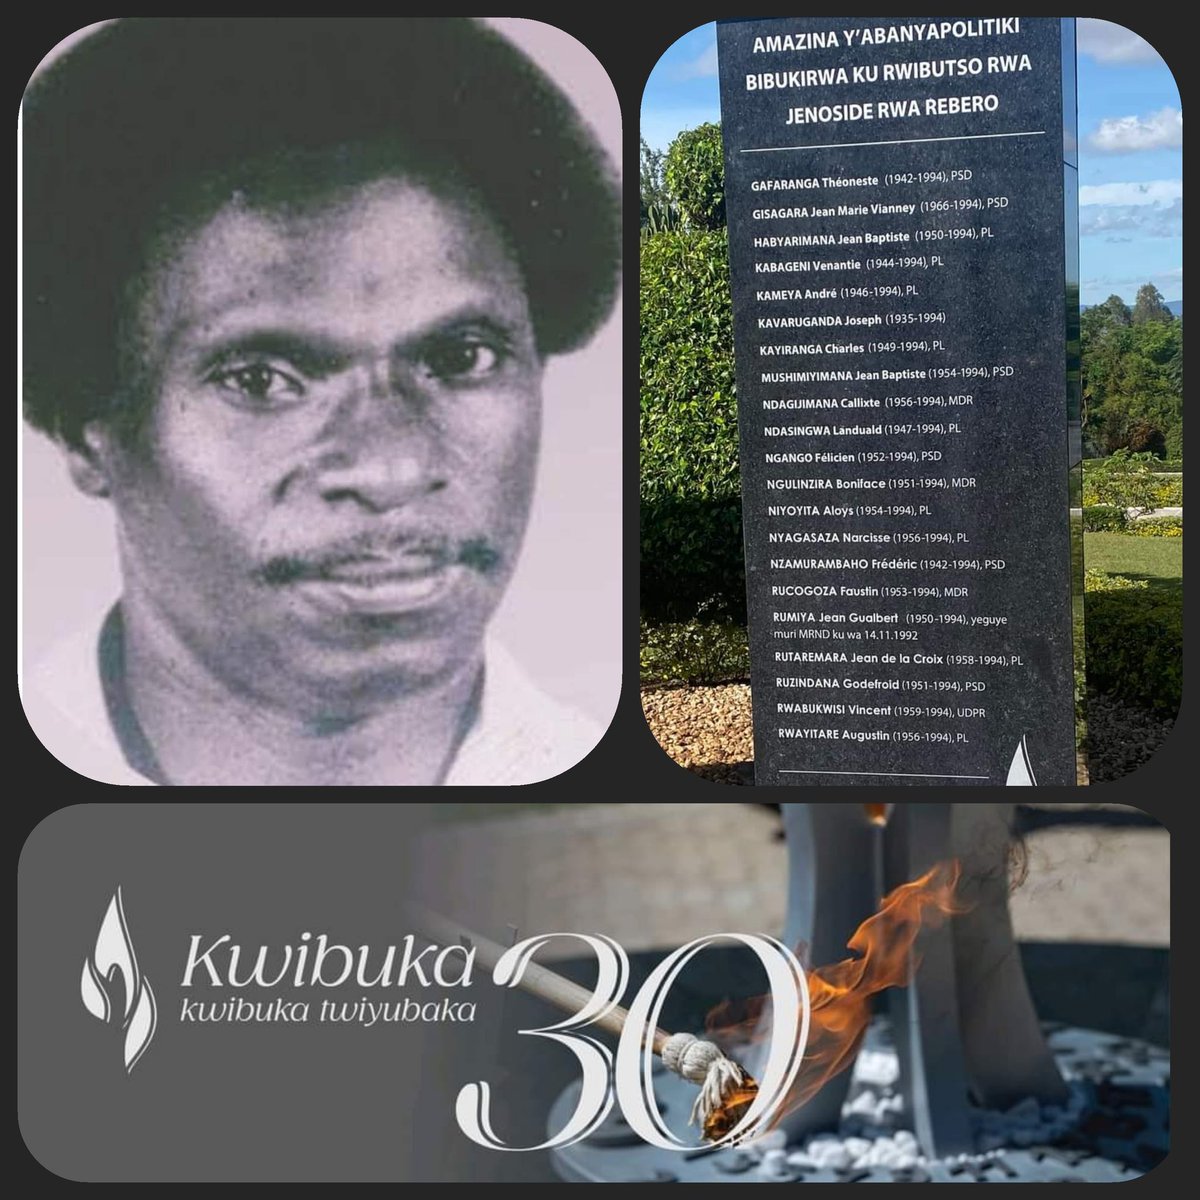 🙏🏾Dr Gafaranga Théoneste🙏🏾
@KwibukaRwanda #Rebero
#Kwibuka30 Pour tous les victimes du Génocide perpétré contre les Tutsis.
Pour tous les Opposants politiques tués en 1994
Ntibizongere ukundi.